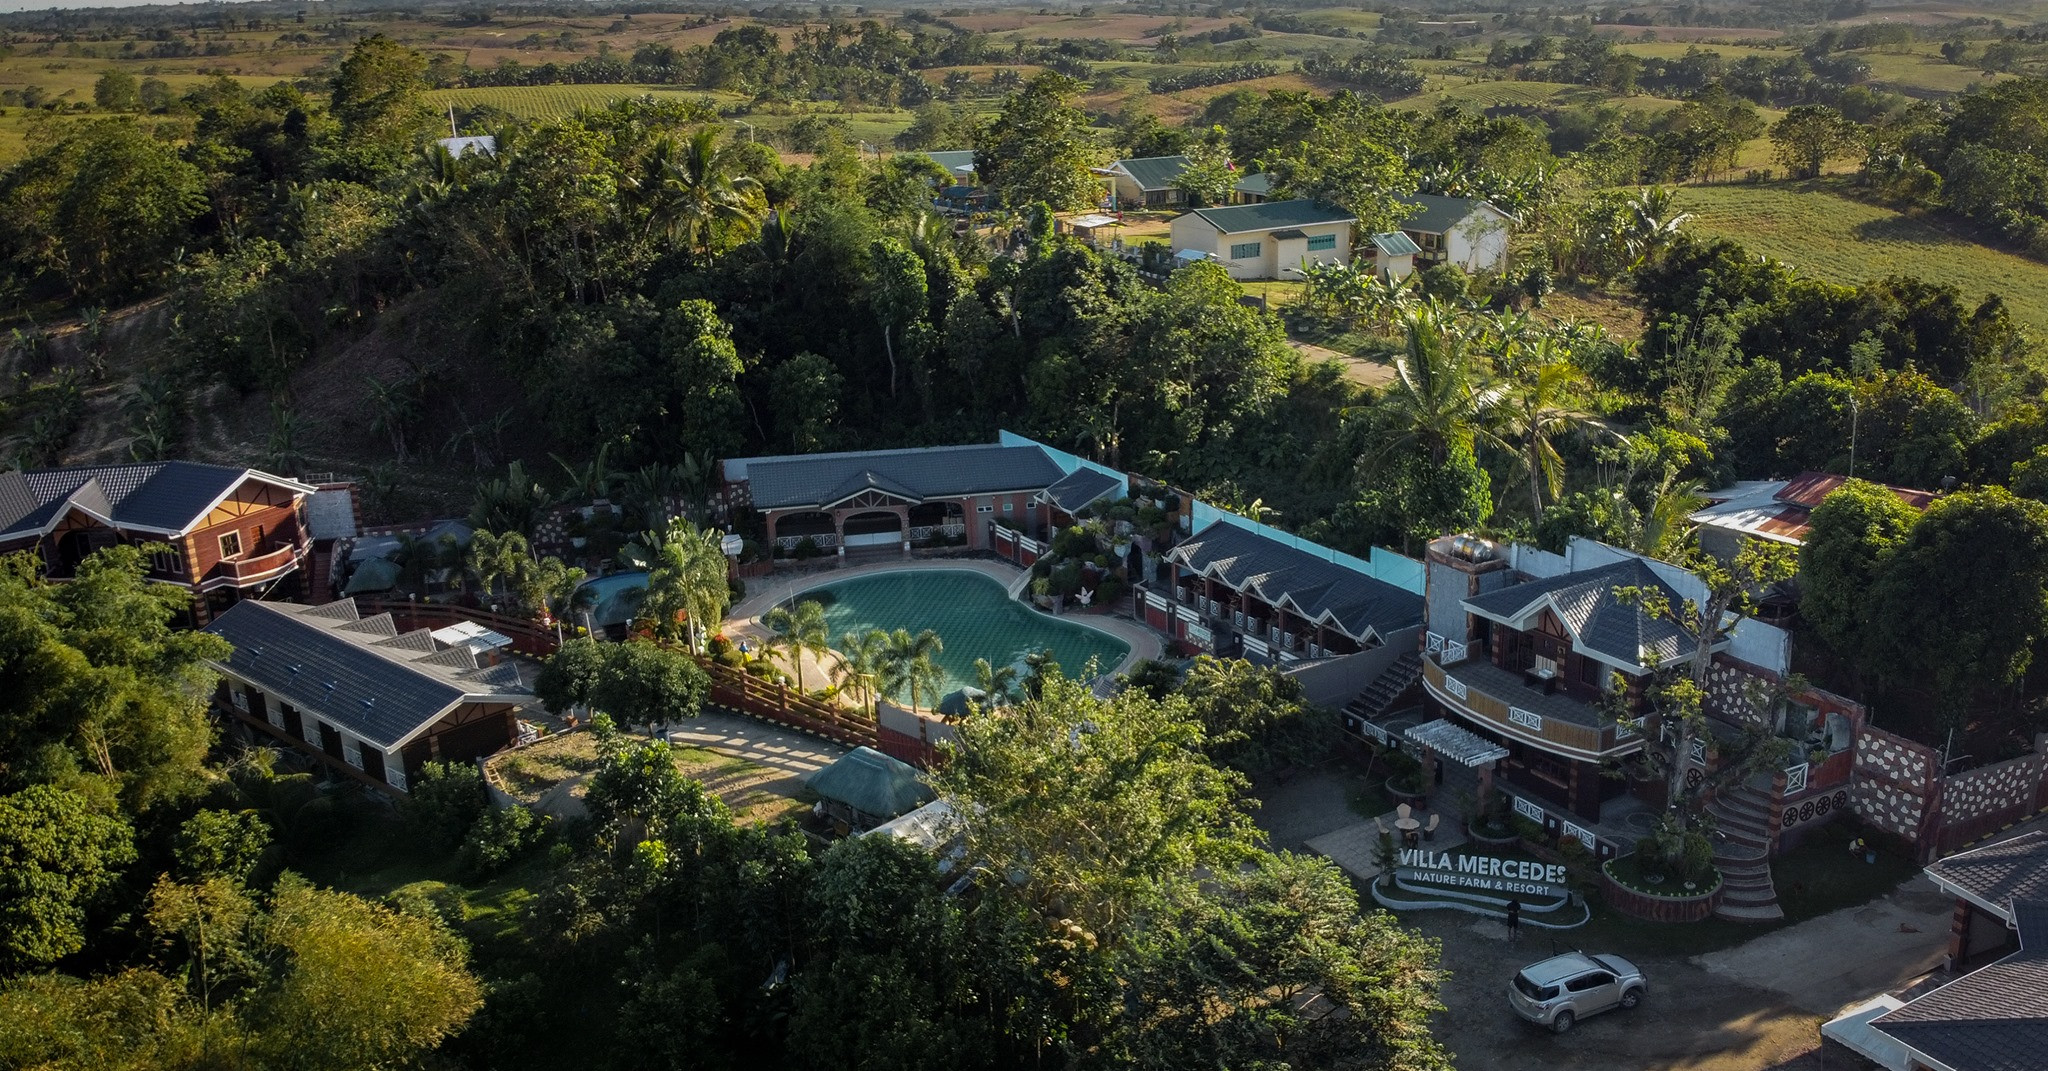 Villa Mercedes Nature Farm & Resort